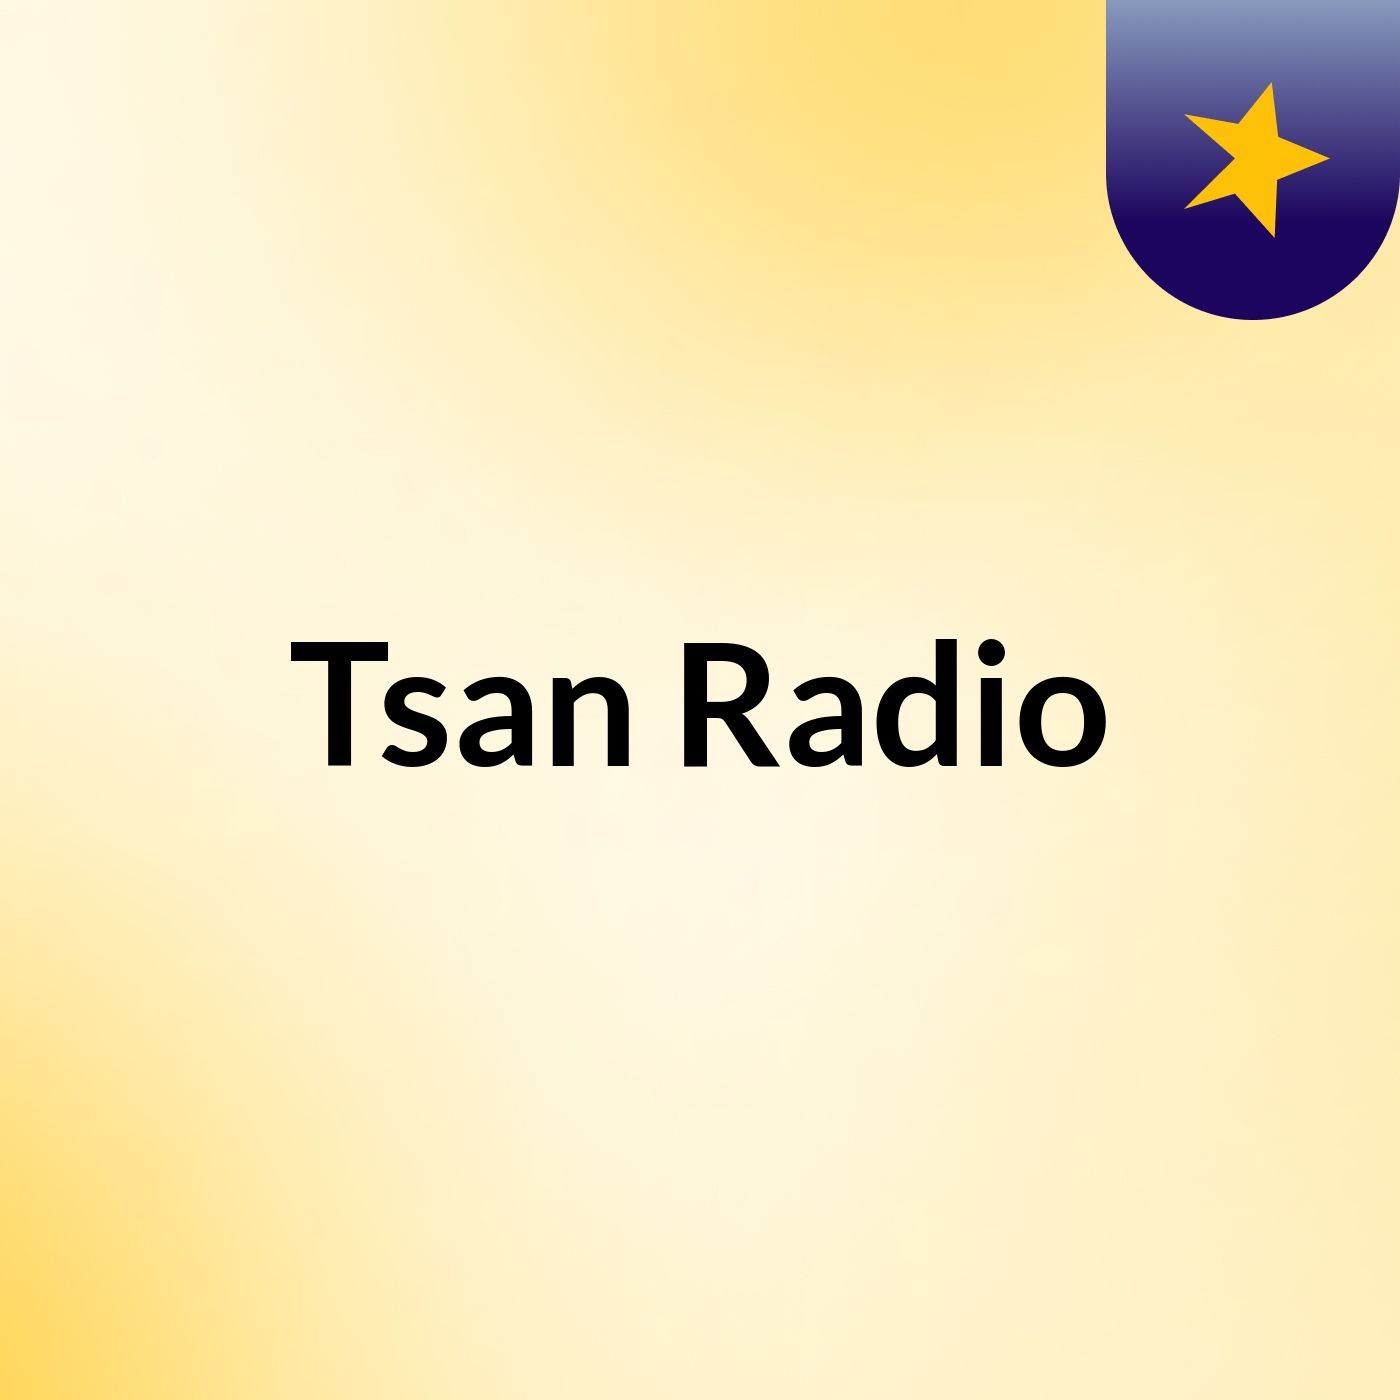 Tsan Radio